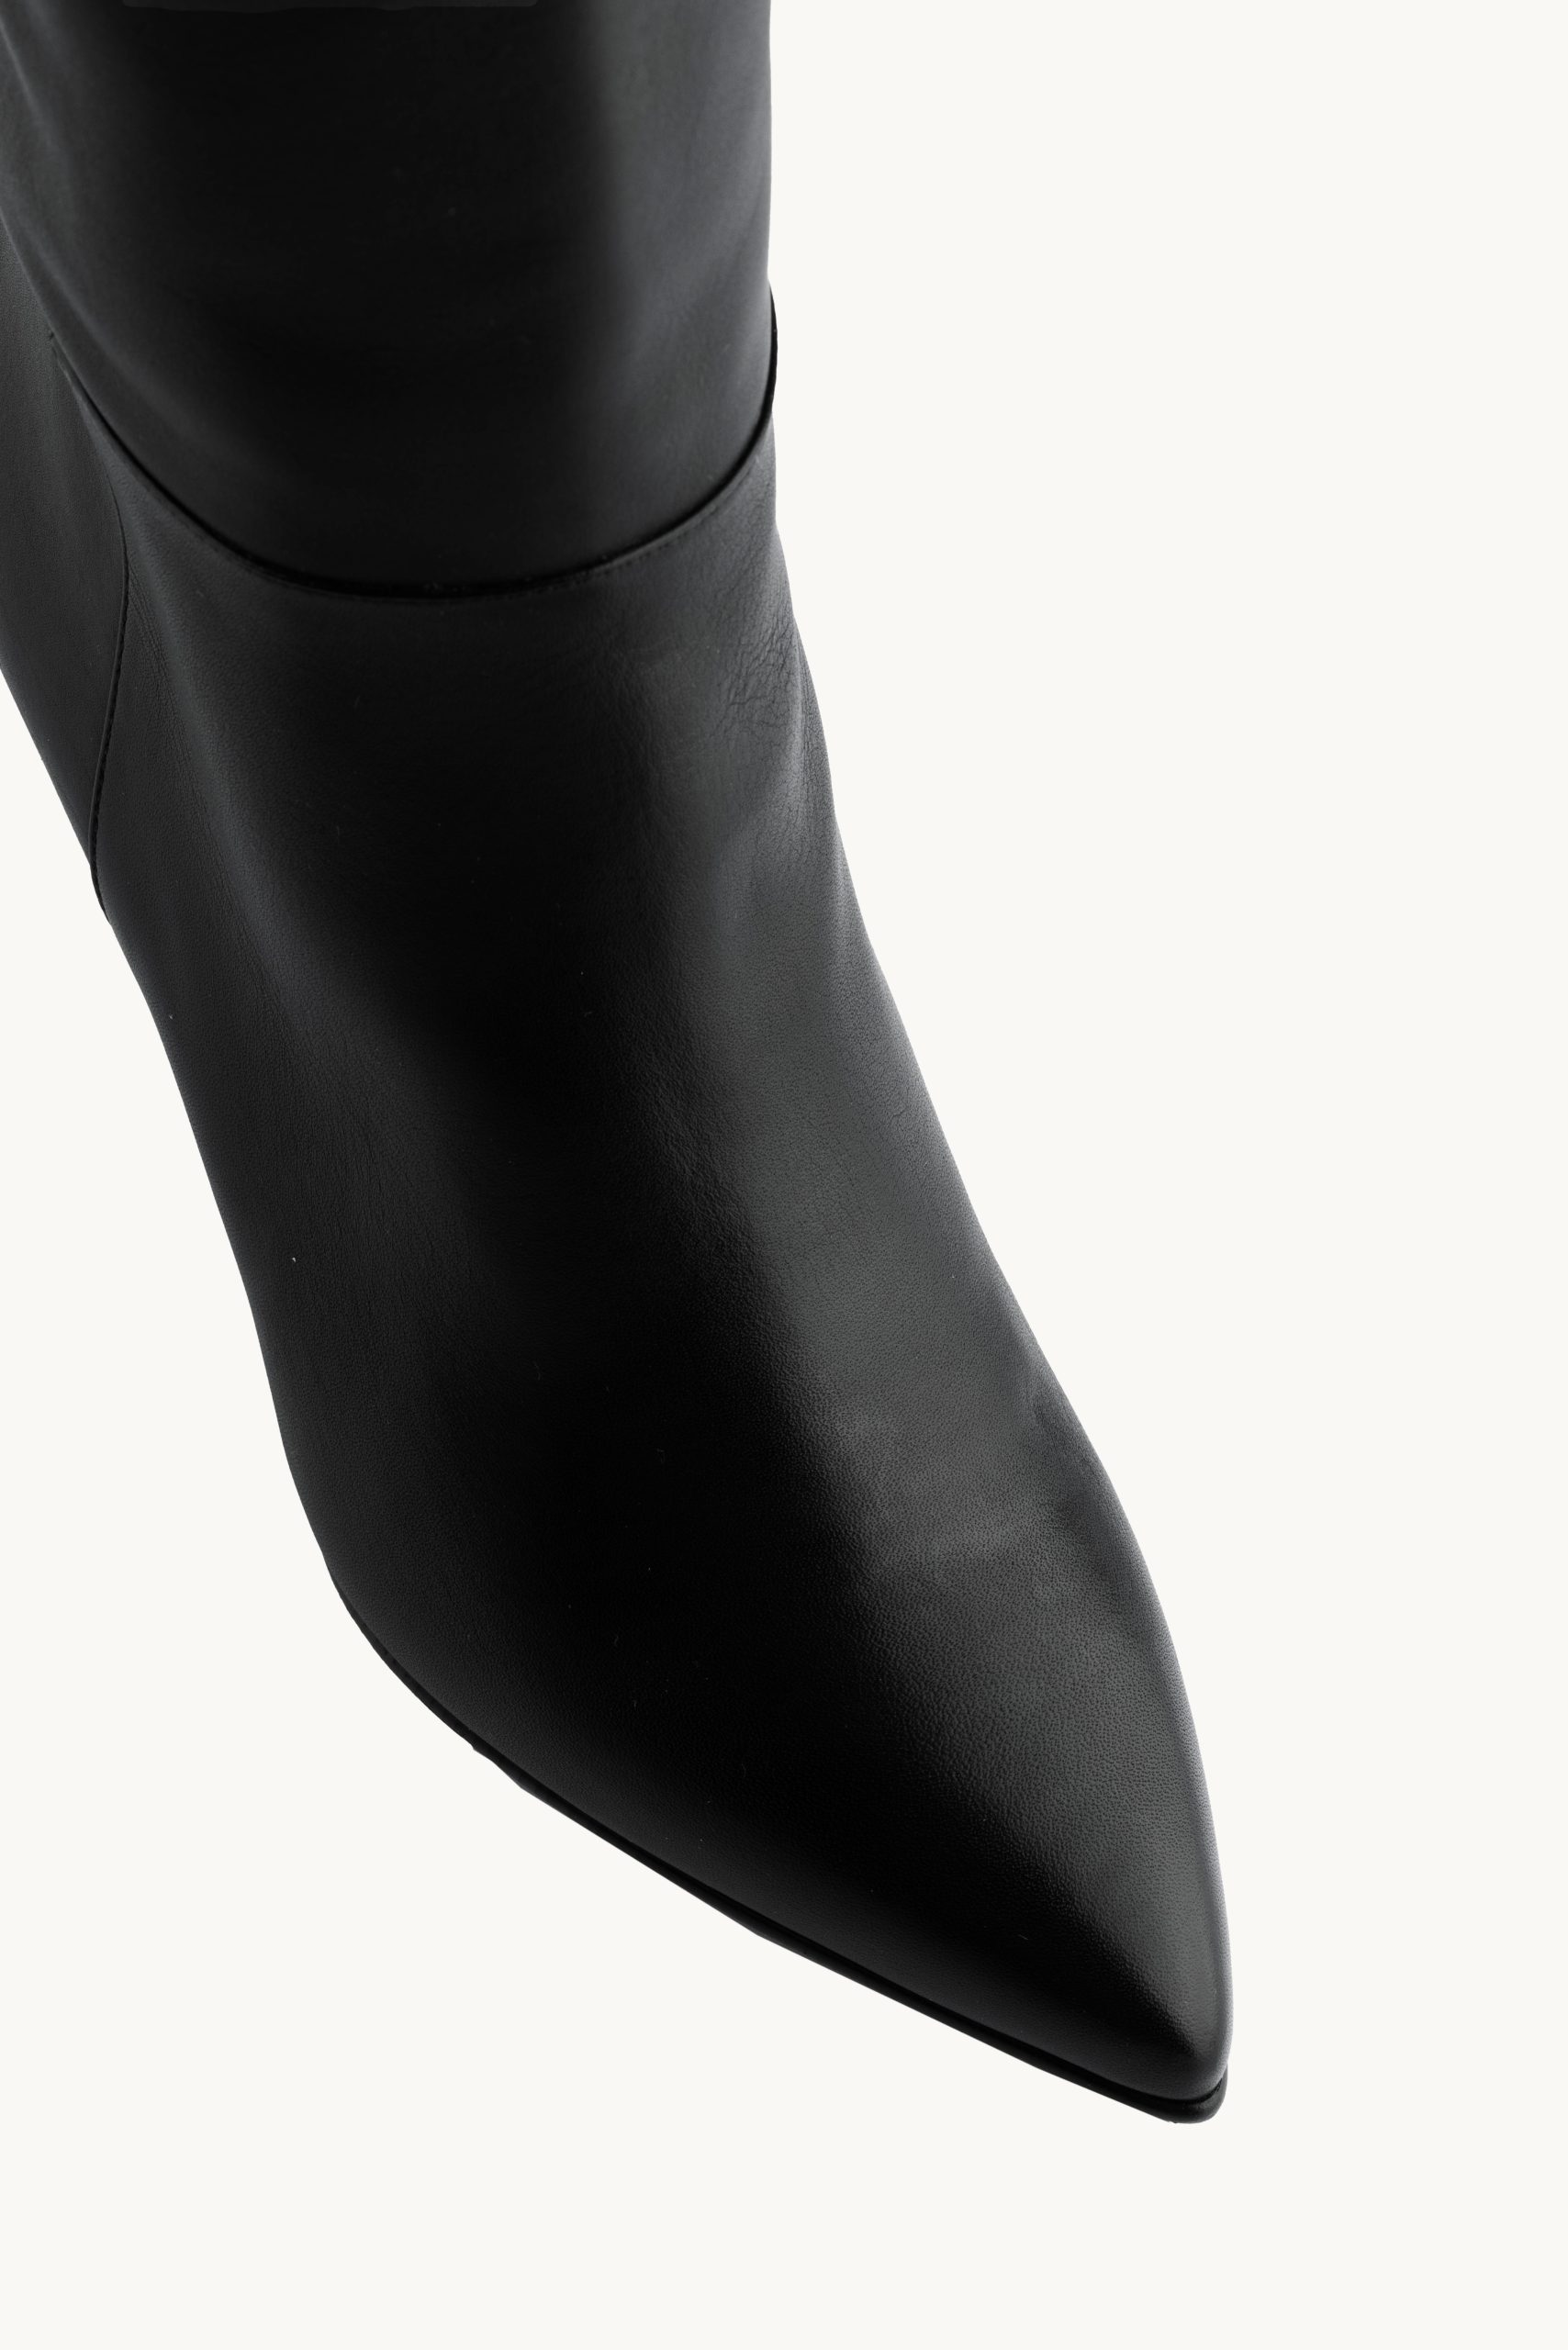 Duge čižme - Black Tranquility - crne duboke čižme sa špicastim vrhom i tankom umerenom štiklom, idealne za svaki dan.